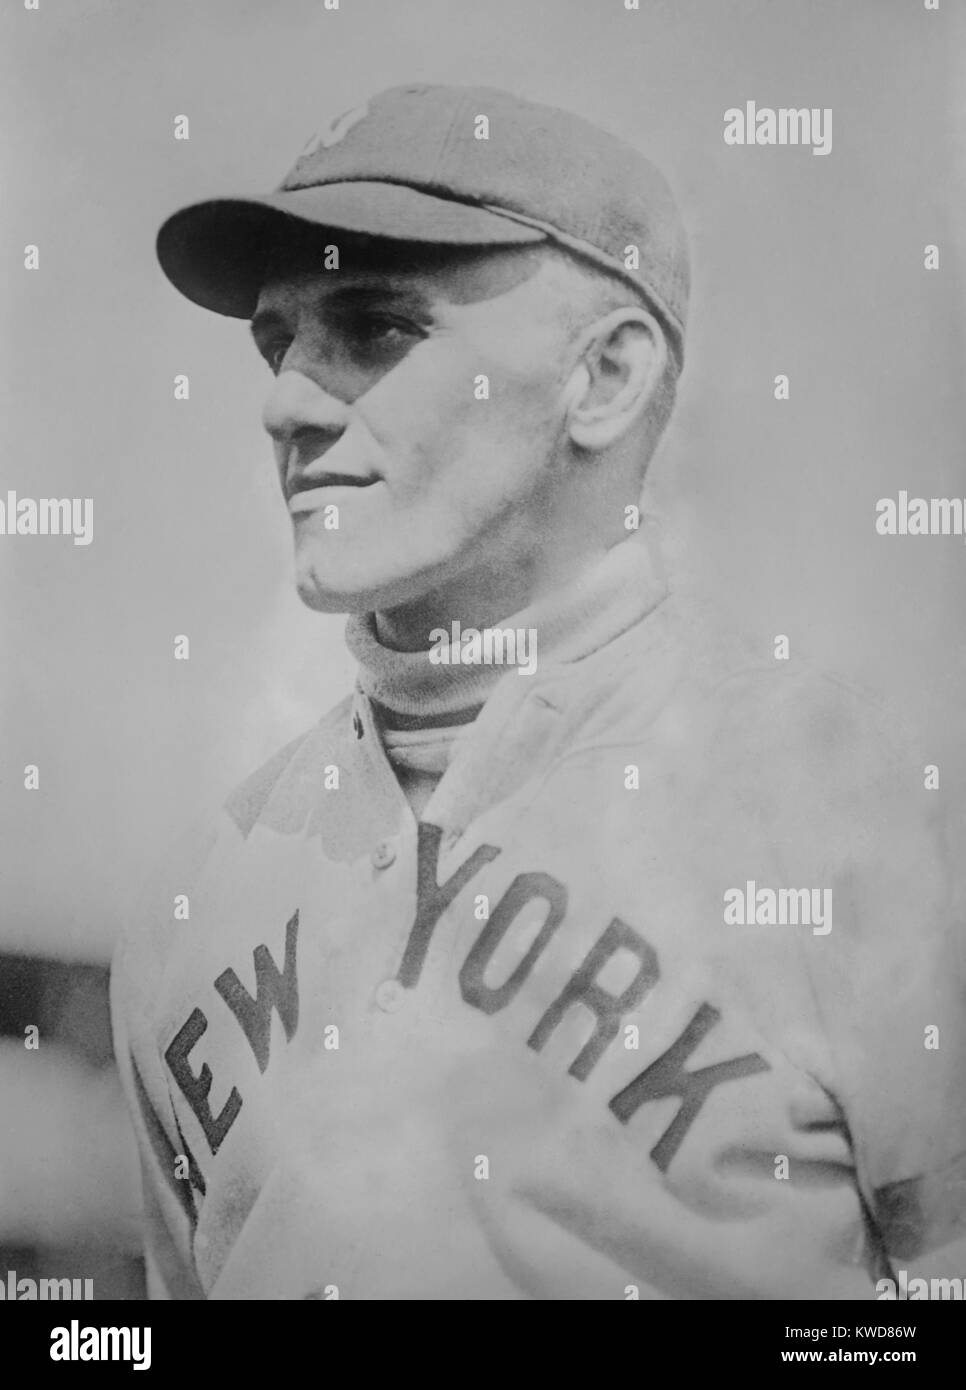 George Halas als New York Yankee im Jahre 1919. Er spielte 12 Spiele als outfielder, bis er von einem hip Verletzungen an den Rand gedrängt wurde. Er wechselte seine Aufmerksamkeit auf Fußball und gründete die National Football League und die Chicago Bears in den frühen 1920er Jahren. (BSLOC 2015 17 130) Stockfoto